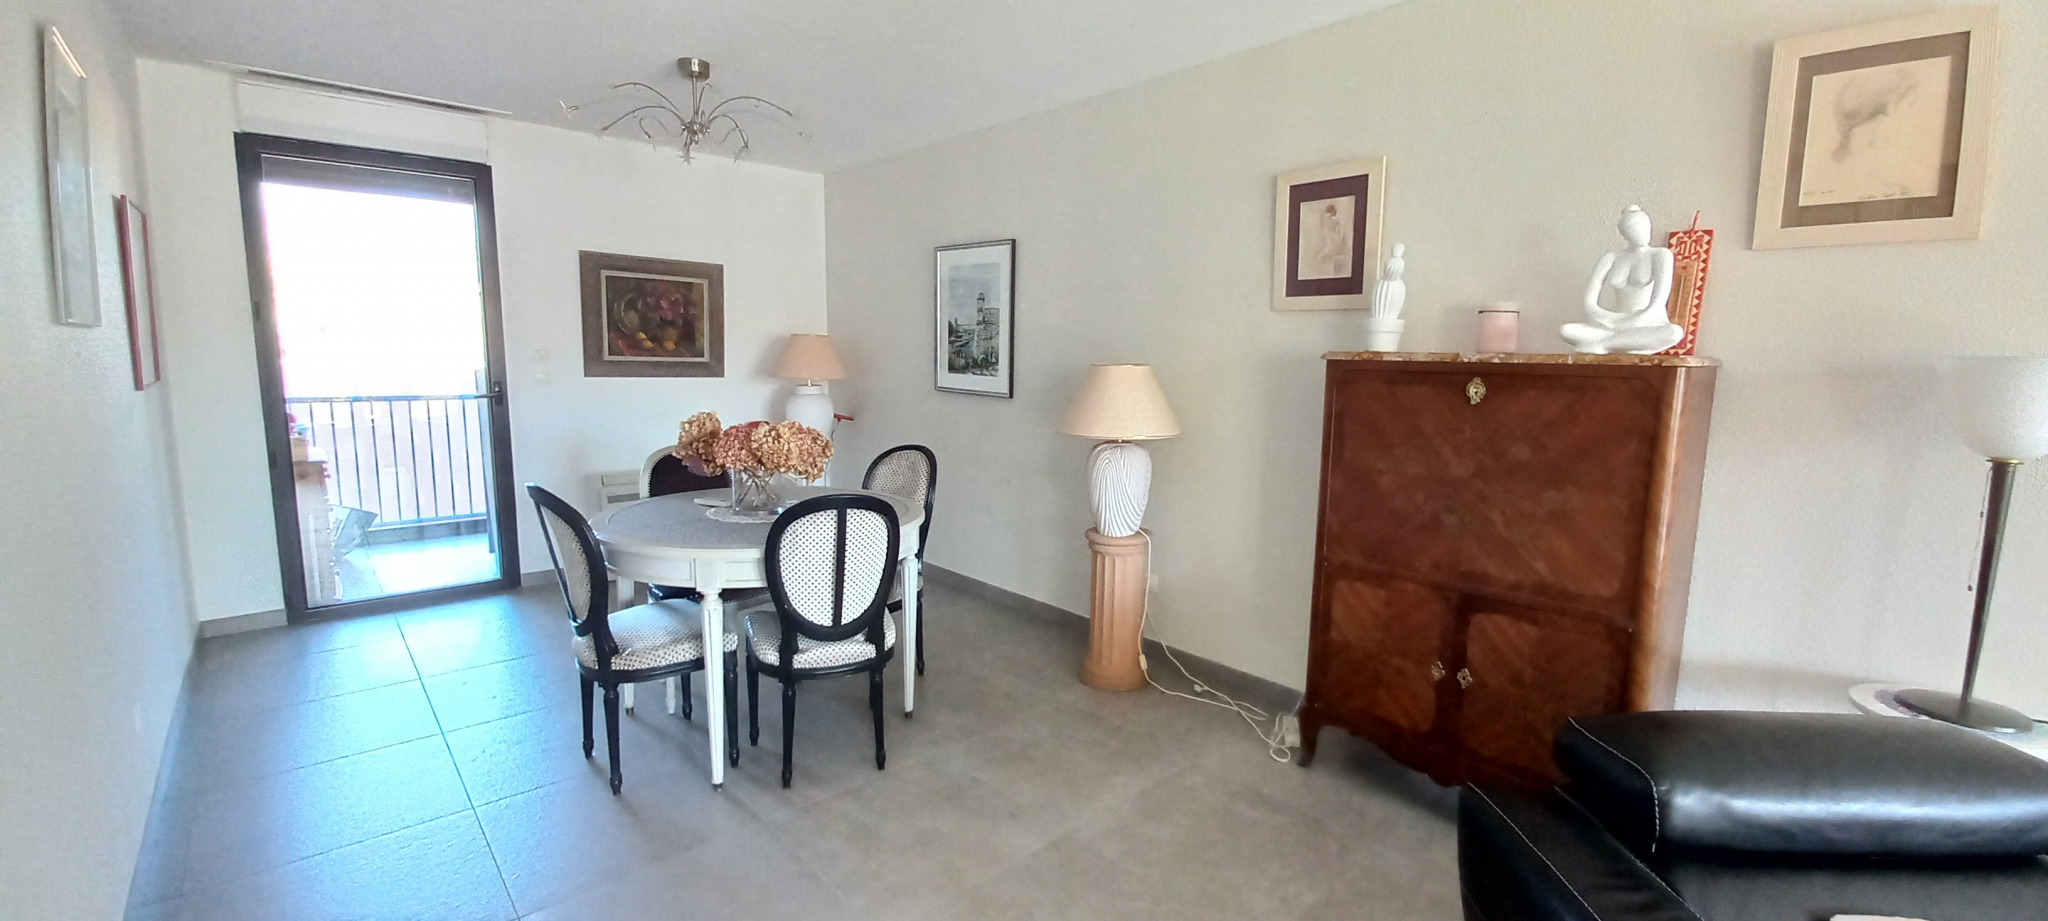 À vendre appartement de 87m2 à argelès-sur-mer (66700) - Photo 5'